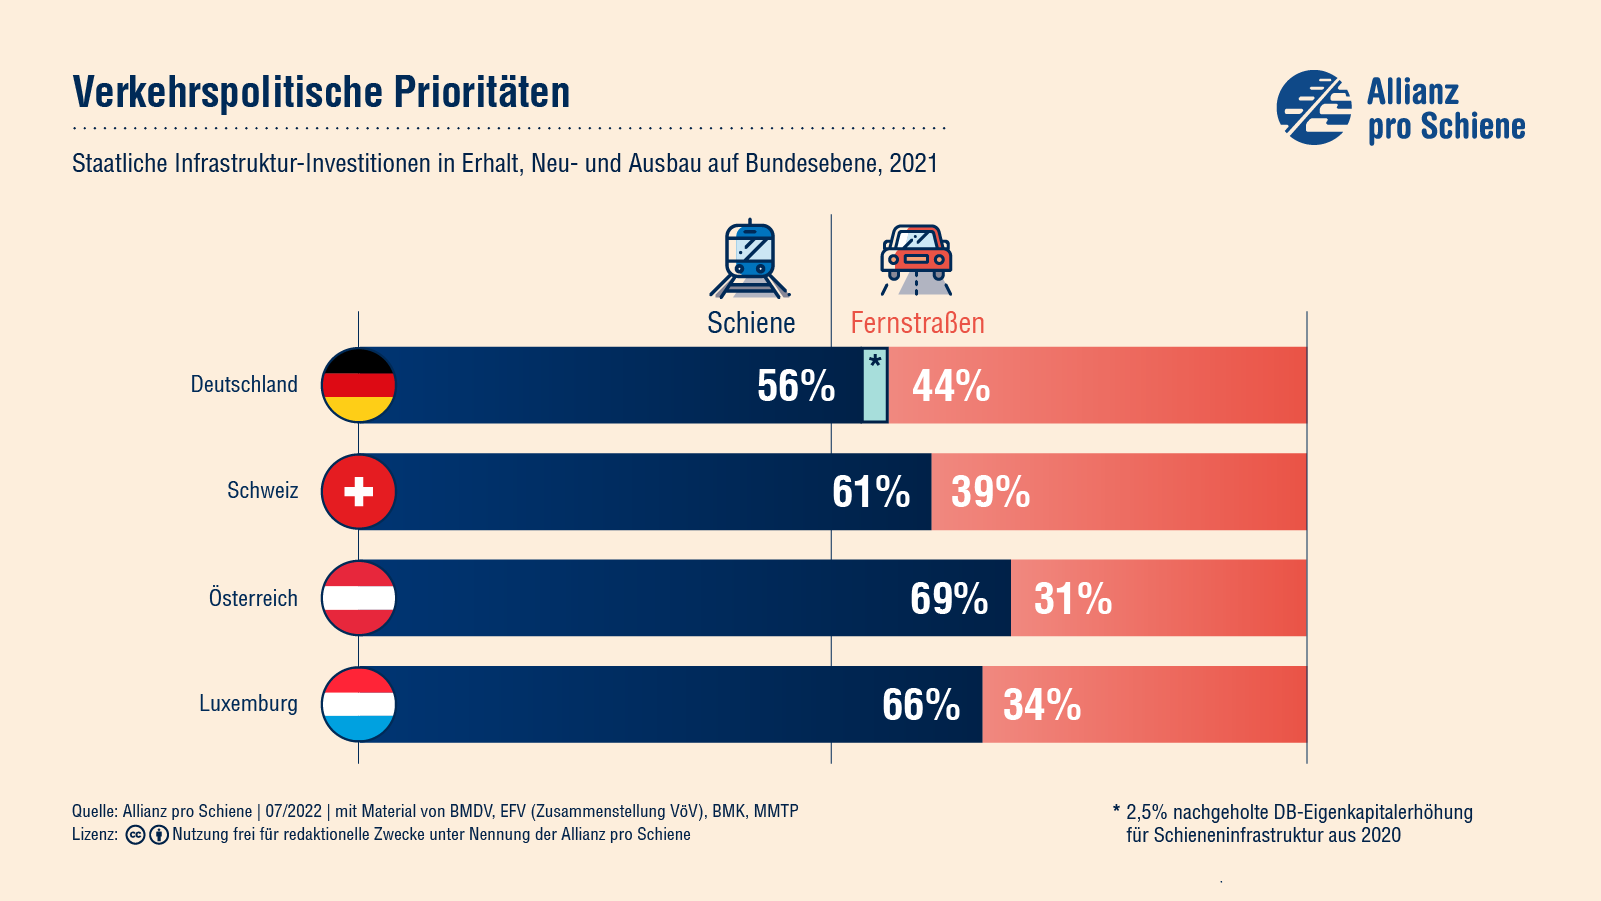 Im Vergleich zu den anderen deutschsprachigen Ländern Europas gibt Deutschland 56% für die Schiene aus, bei den anderen Ländern sind es min. 60%